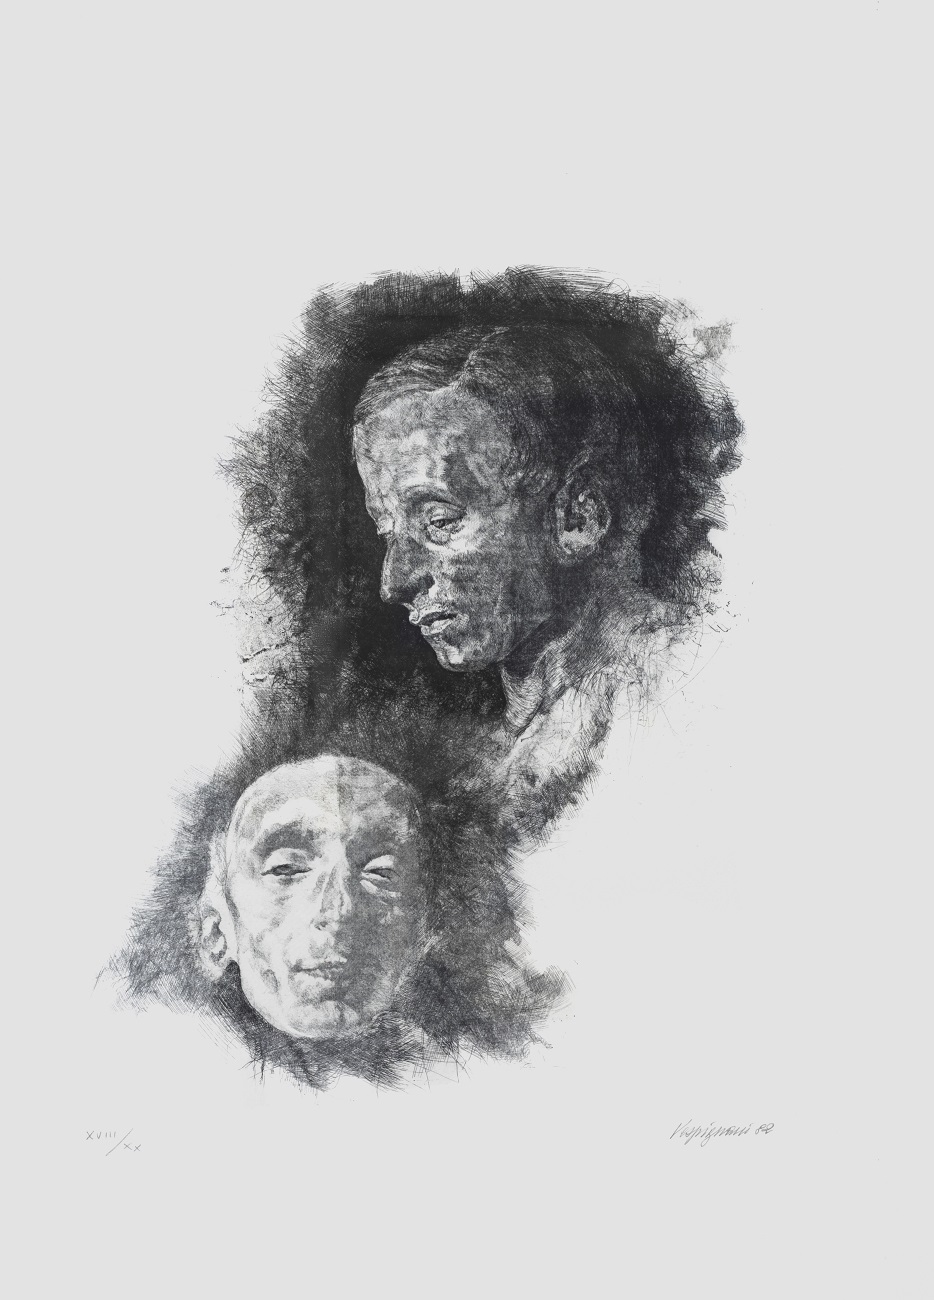 Ritratto e maschera funeraria di Giacomo Leopardi | Renzo Vespignani